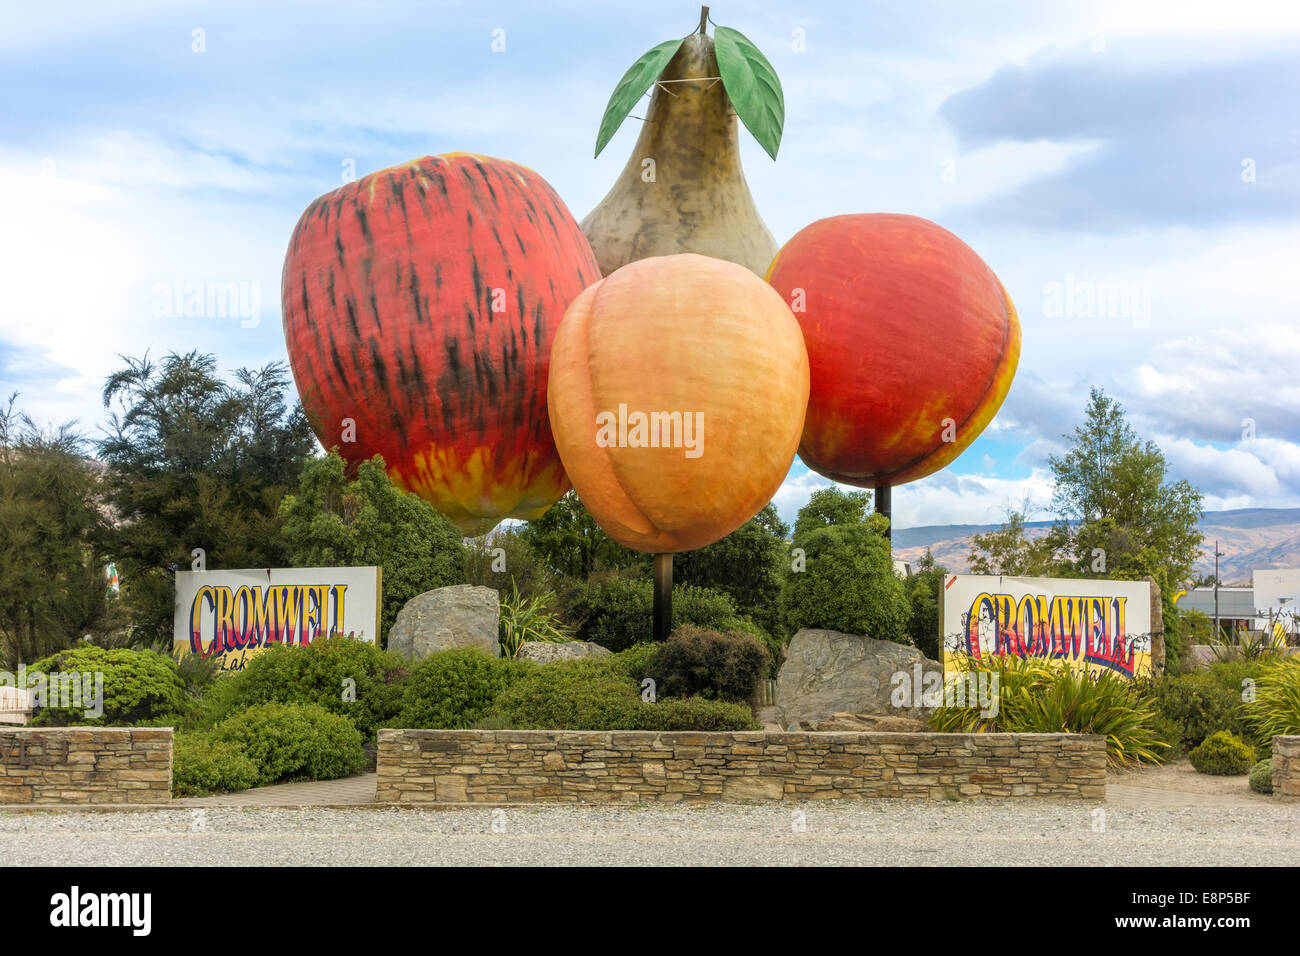 La sculpture de fruits géant à l'entrée de l'Otago Cromwell Nouvelle-zélande Roadside Attraction Big Apple Poire abricot Nectarine Banque D'Images